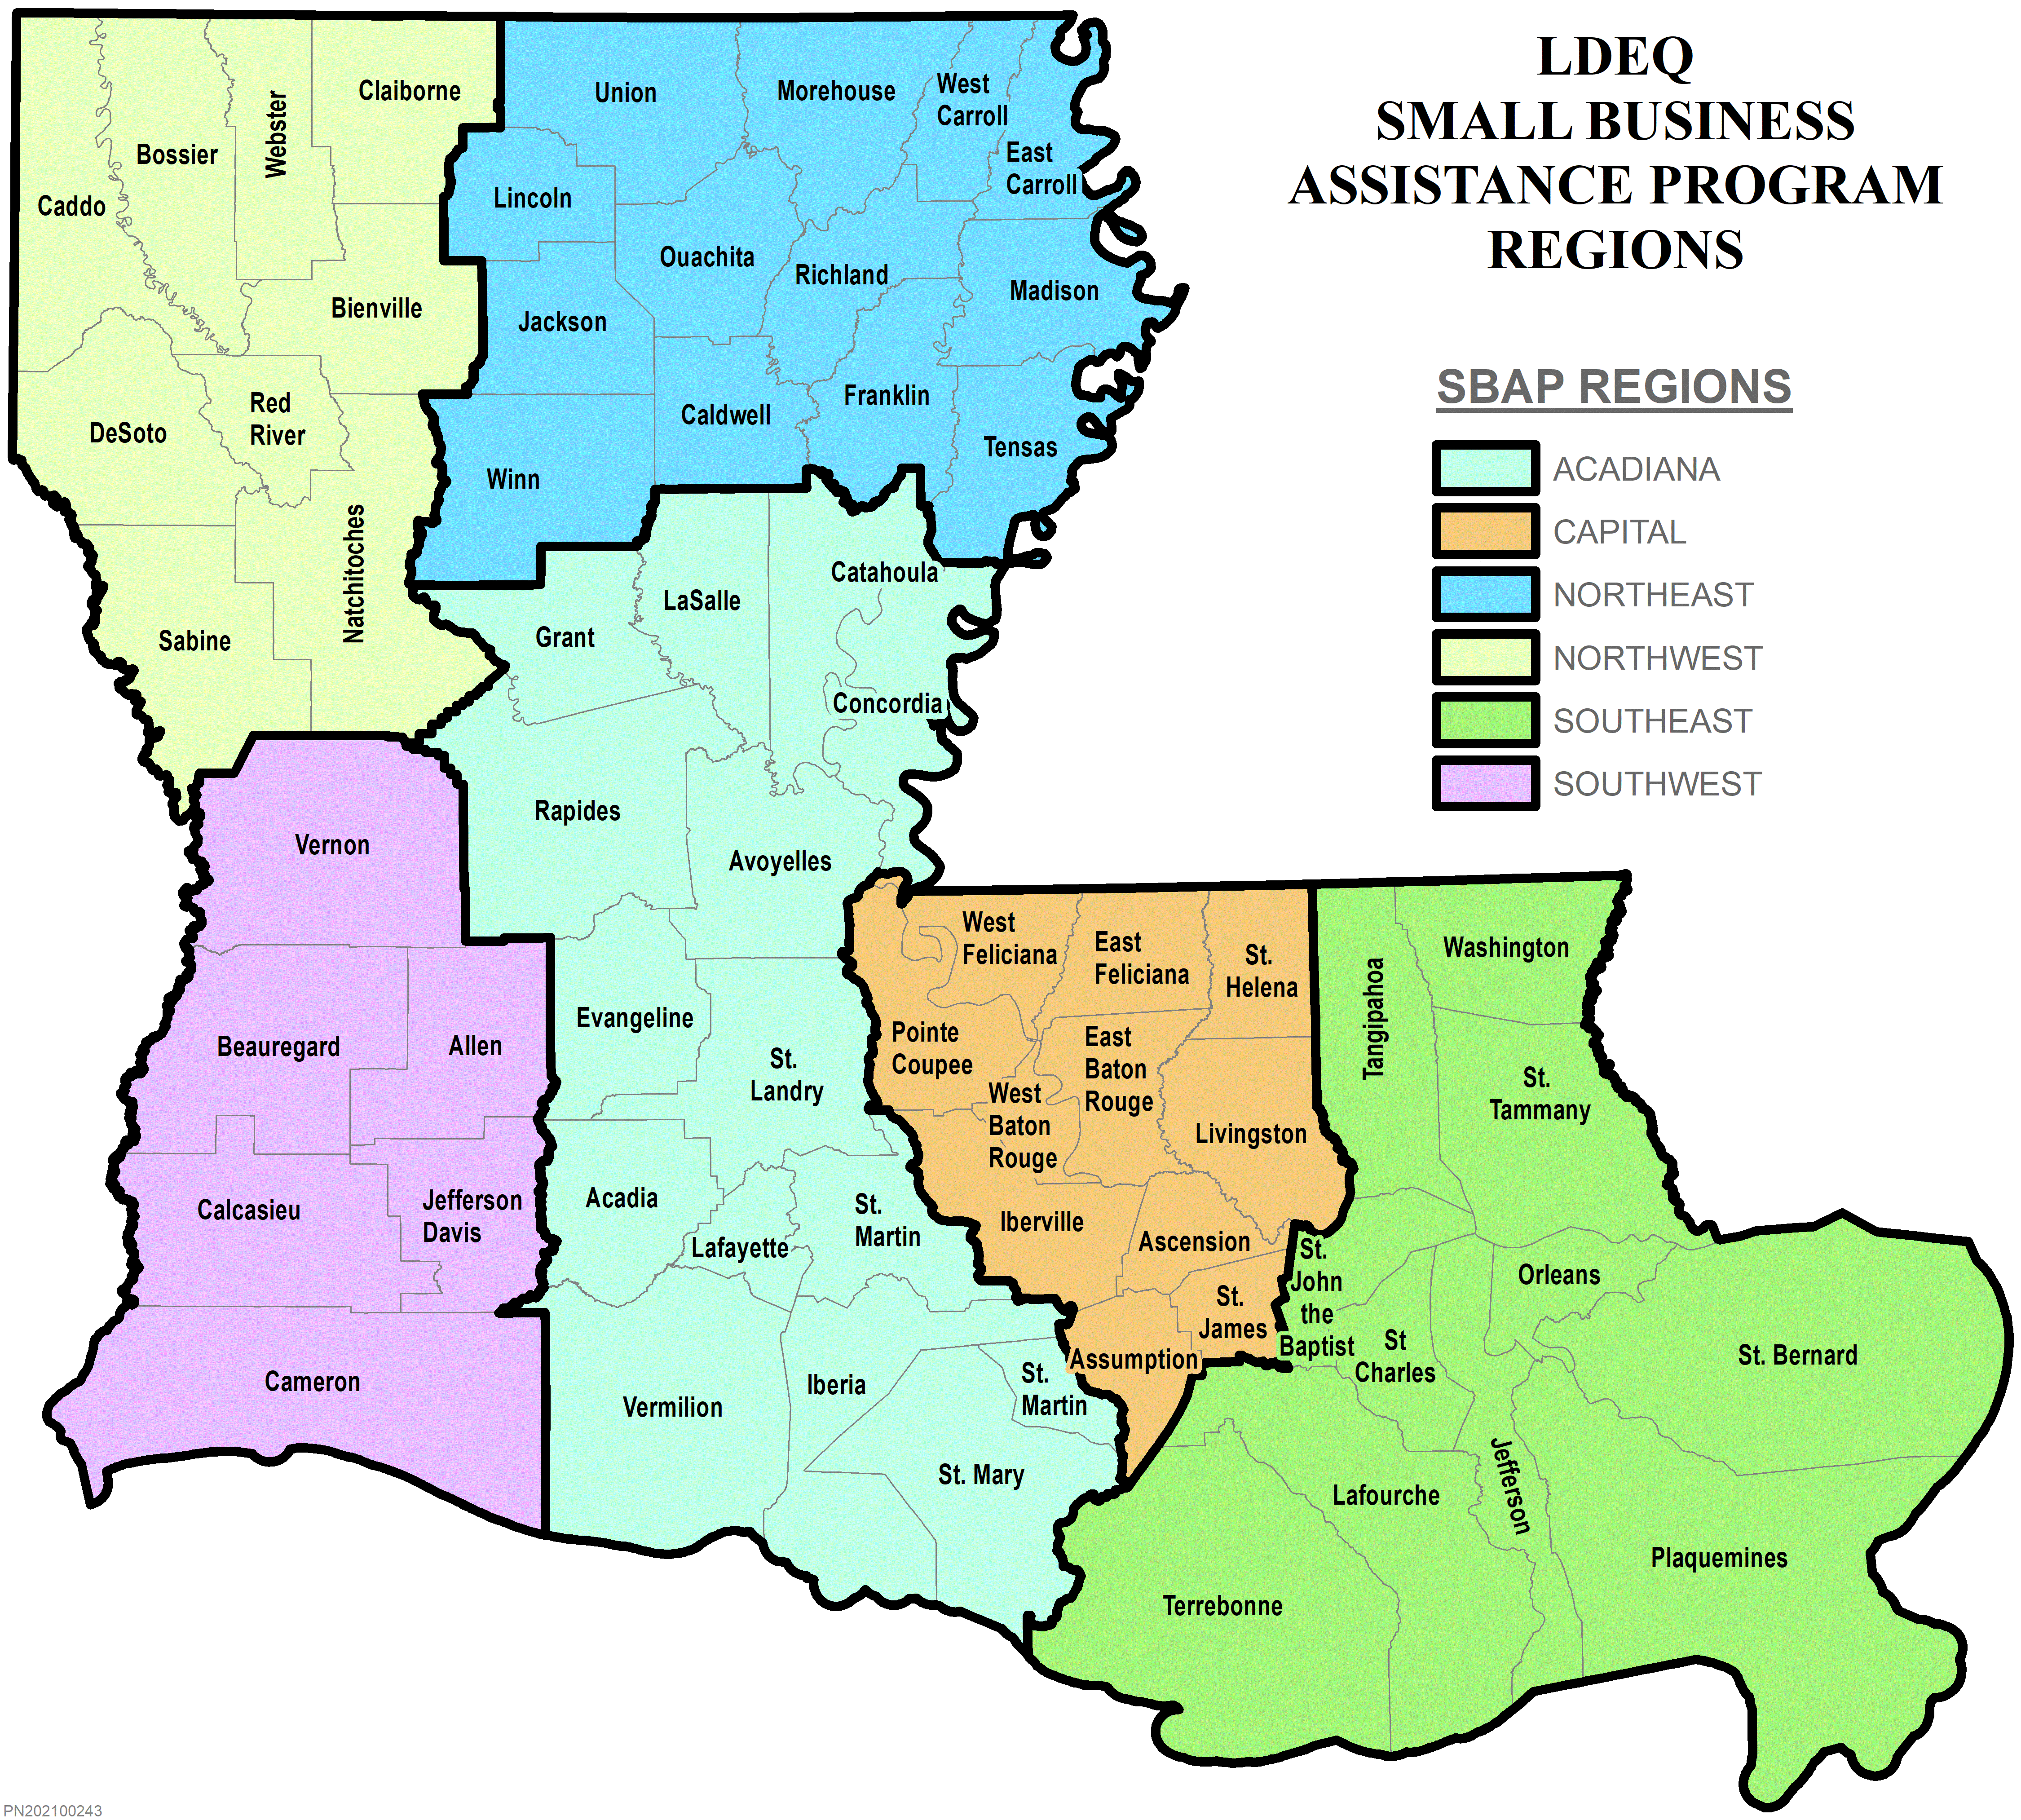 LDEQ Small Business Assistance Program Regions